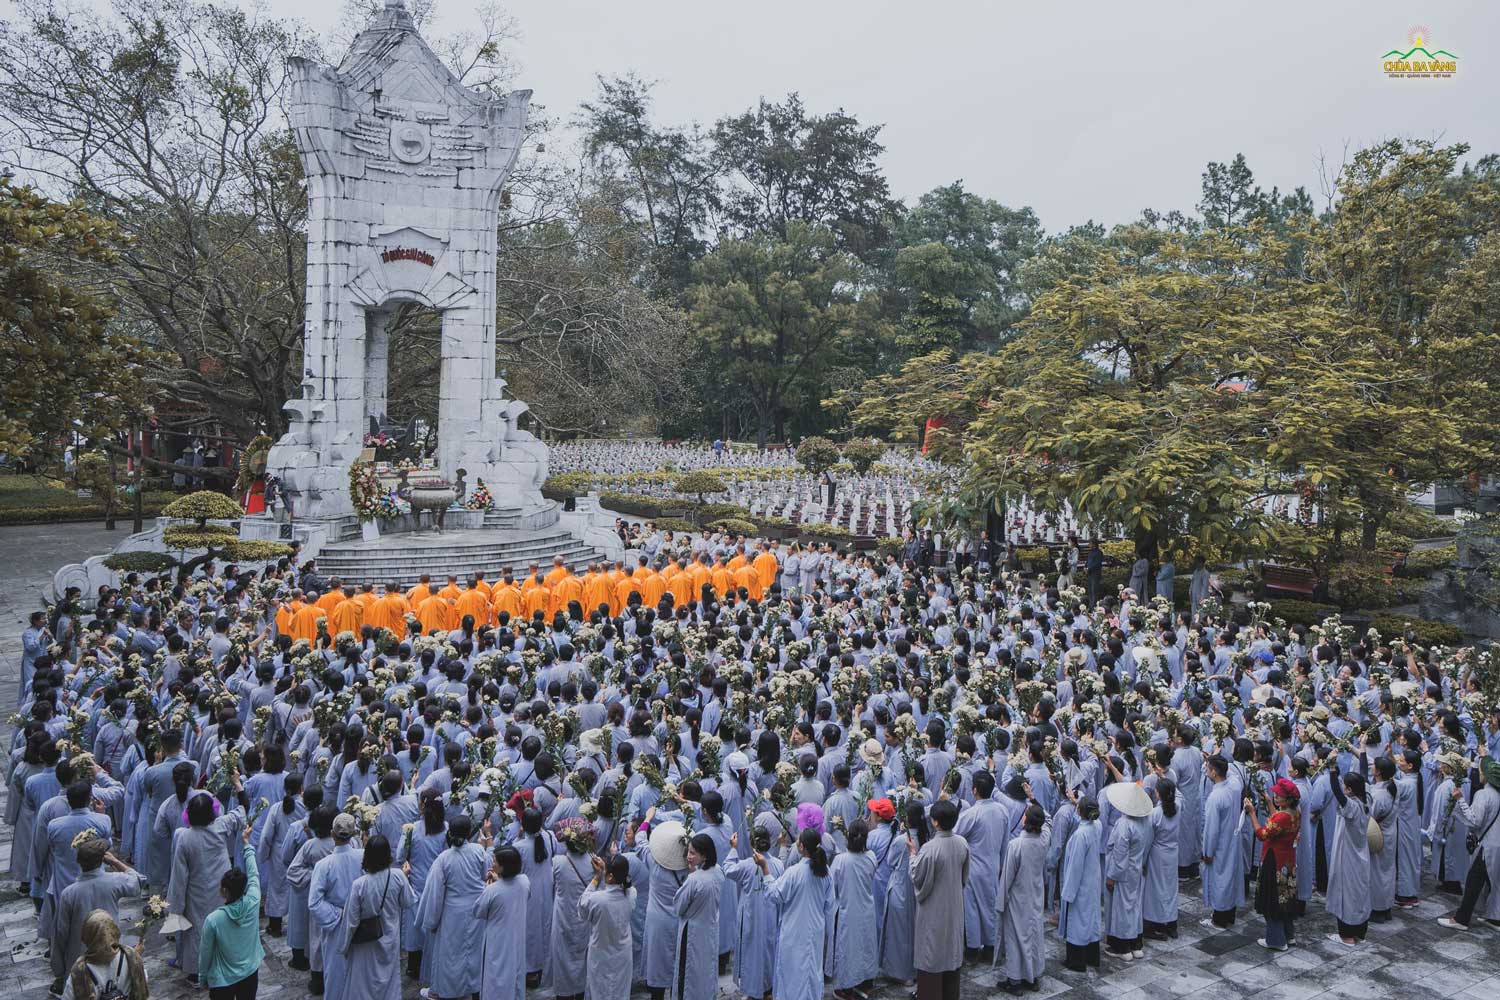 Trước 10.263 ngôi mộ giữa đại ngàn Trường Sơn, những người con Phật càng cảm niệm công đức của các anh các chị đã ngã xuống để cho Tổ quốc được hồi sinh, dân tộc được độc lập. Trong tâm của mỗi người dường như cũng thấu hiểu hơn sự vô giá của độc lập, hòa bình...